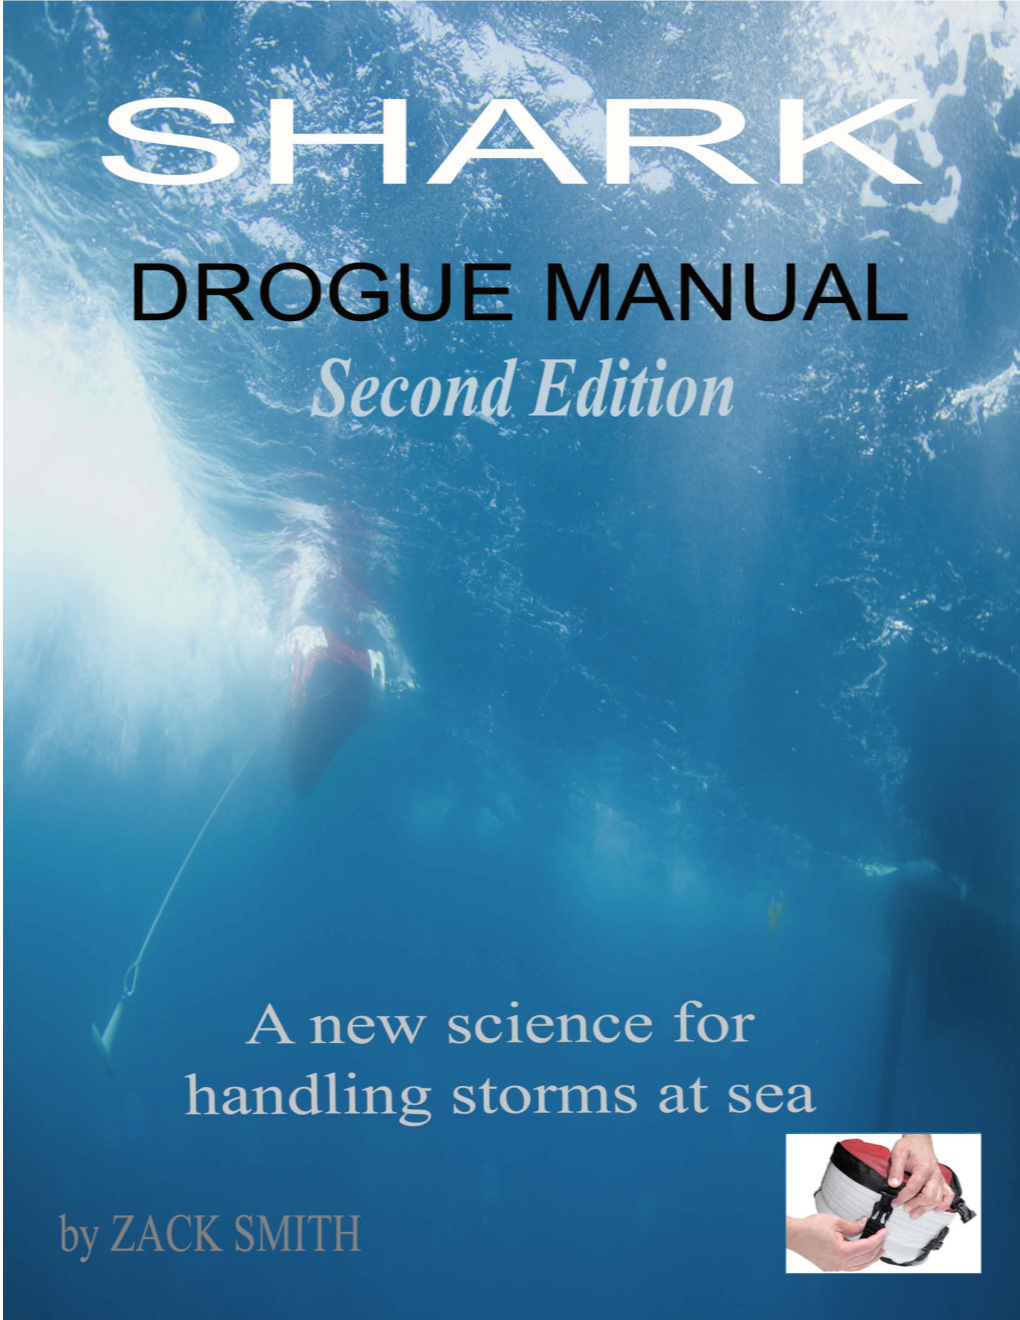 Shark Drogue Manual Copyrighted Material